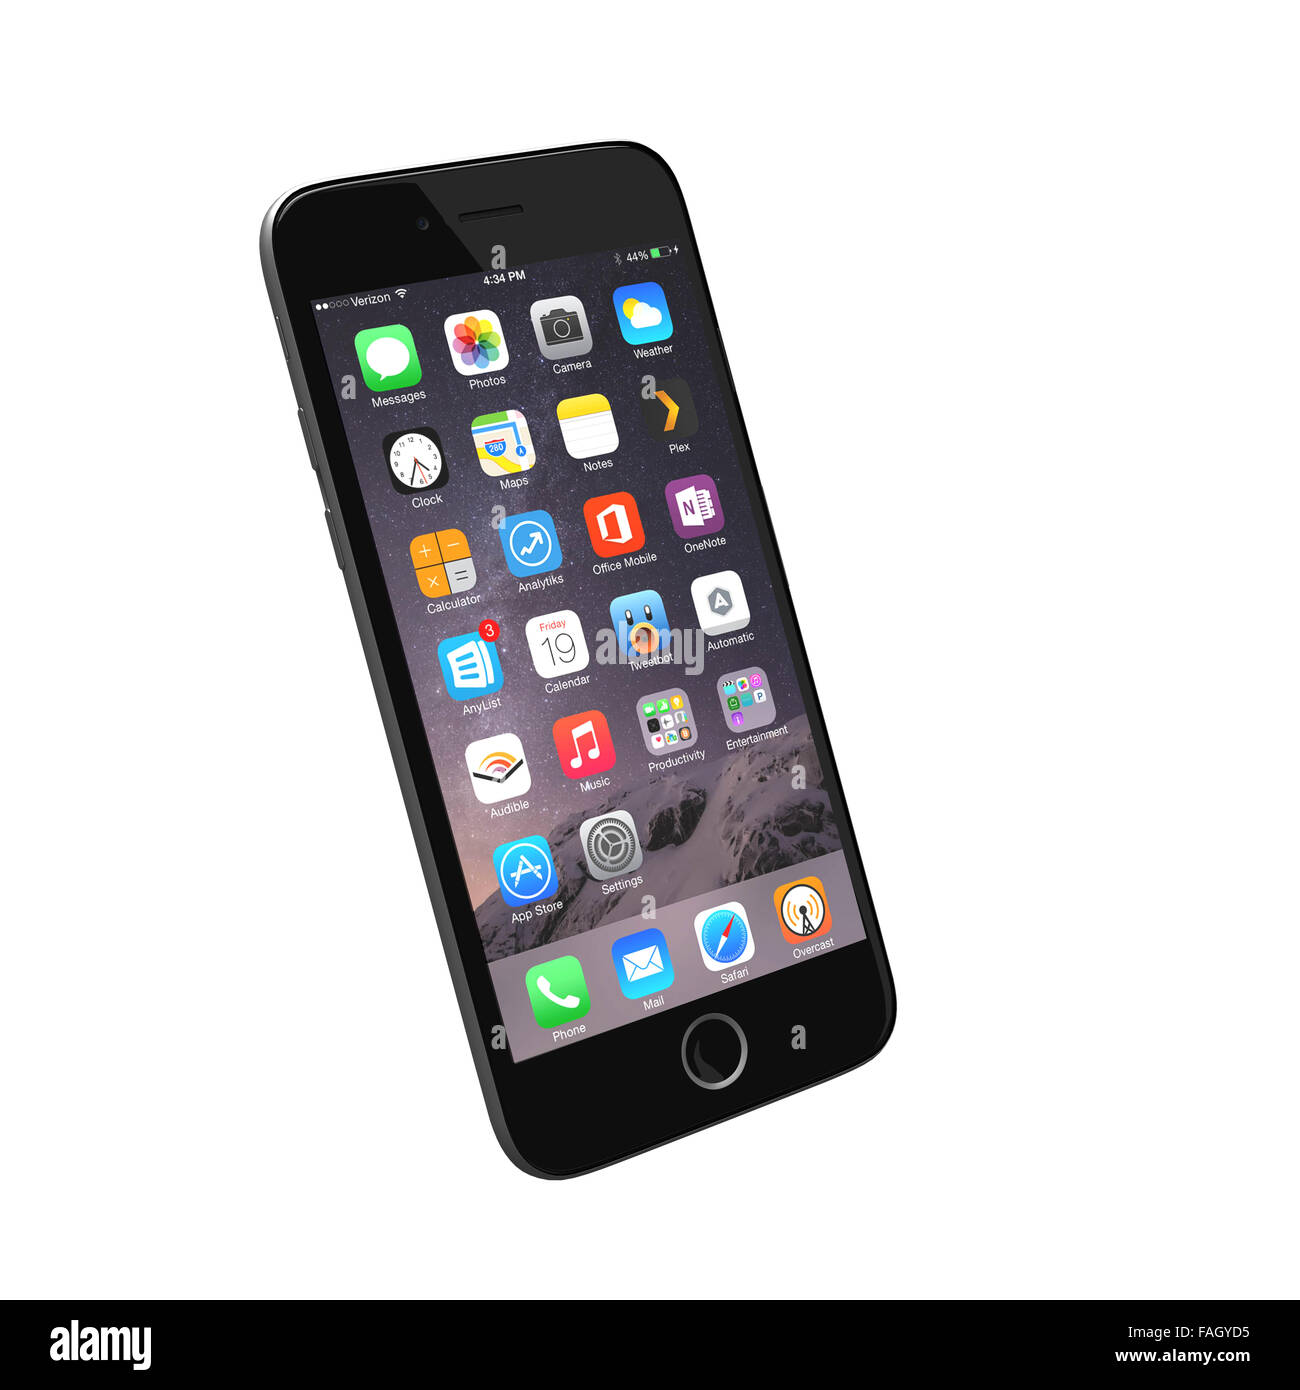 Hilvarenbeek, Pays-Bas - le 18 décembre 2015 : rendre réaliste d'un téléphone intelligent basé sur l'iPhone 6 images de référence. Banque D'Images